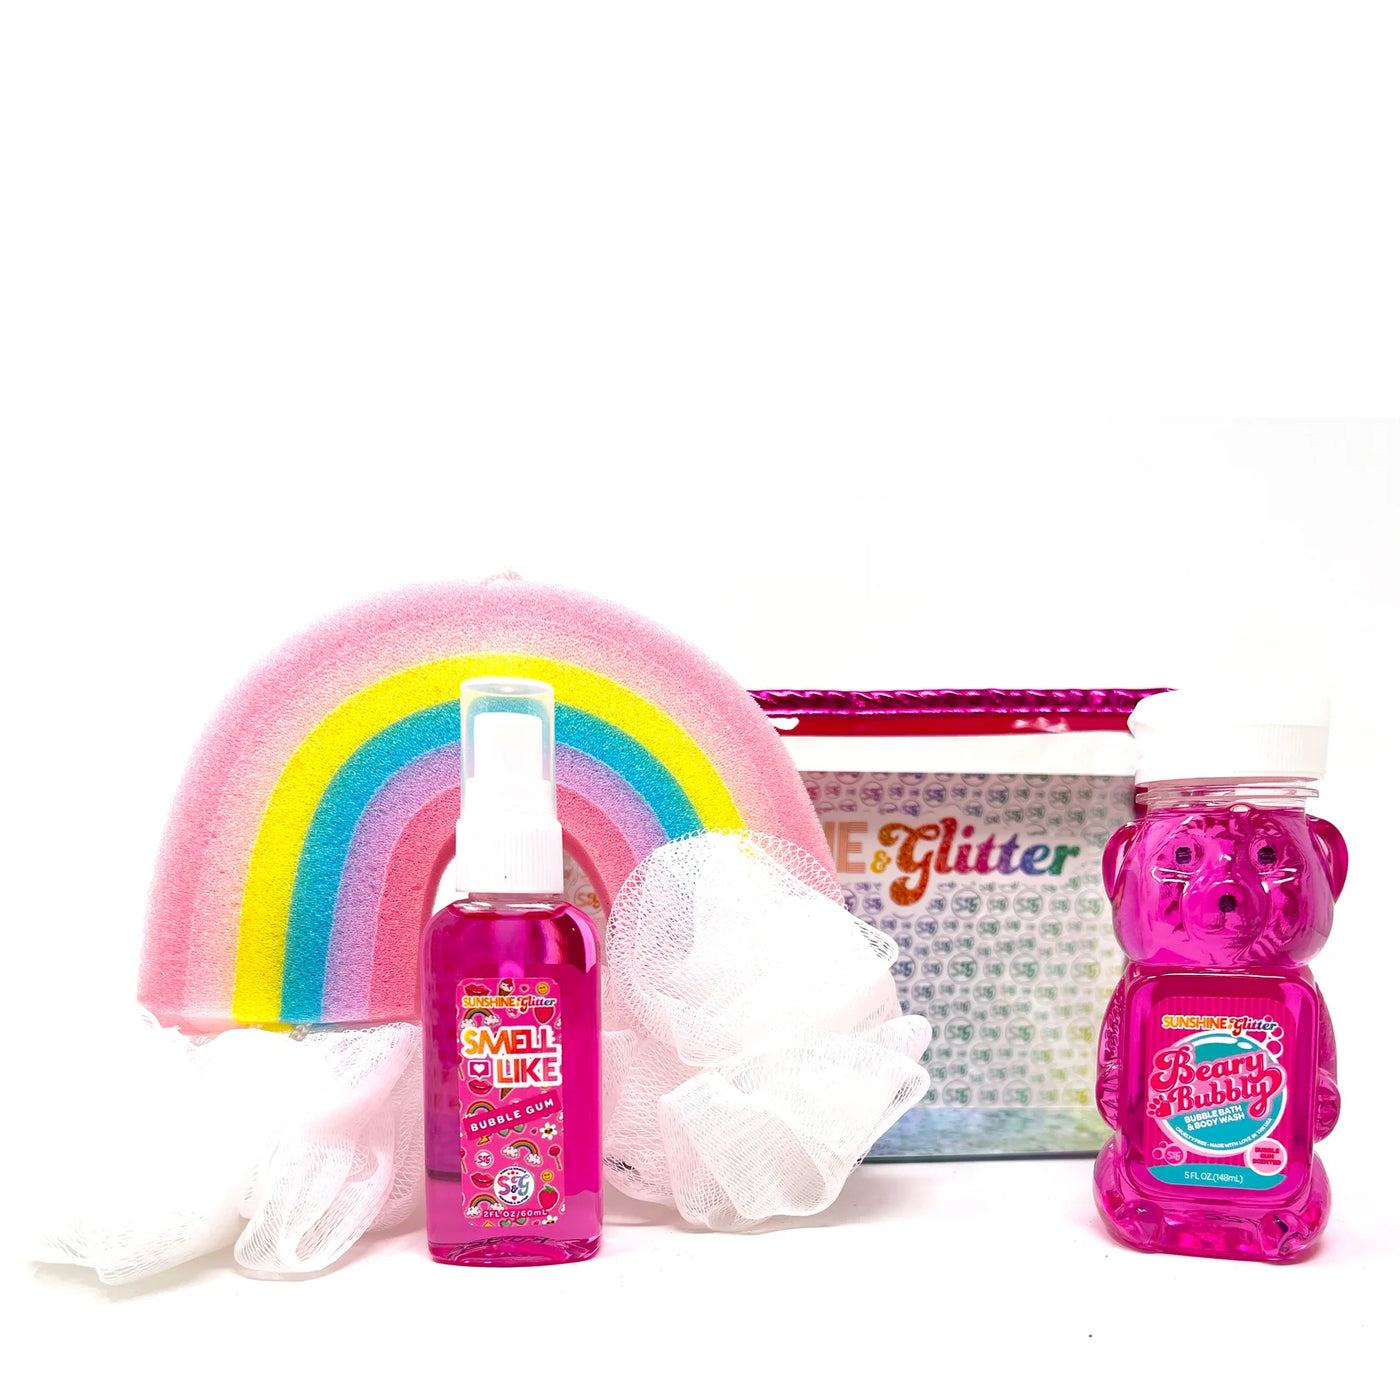 Beary Bubbly Gift Set